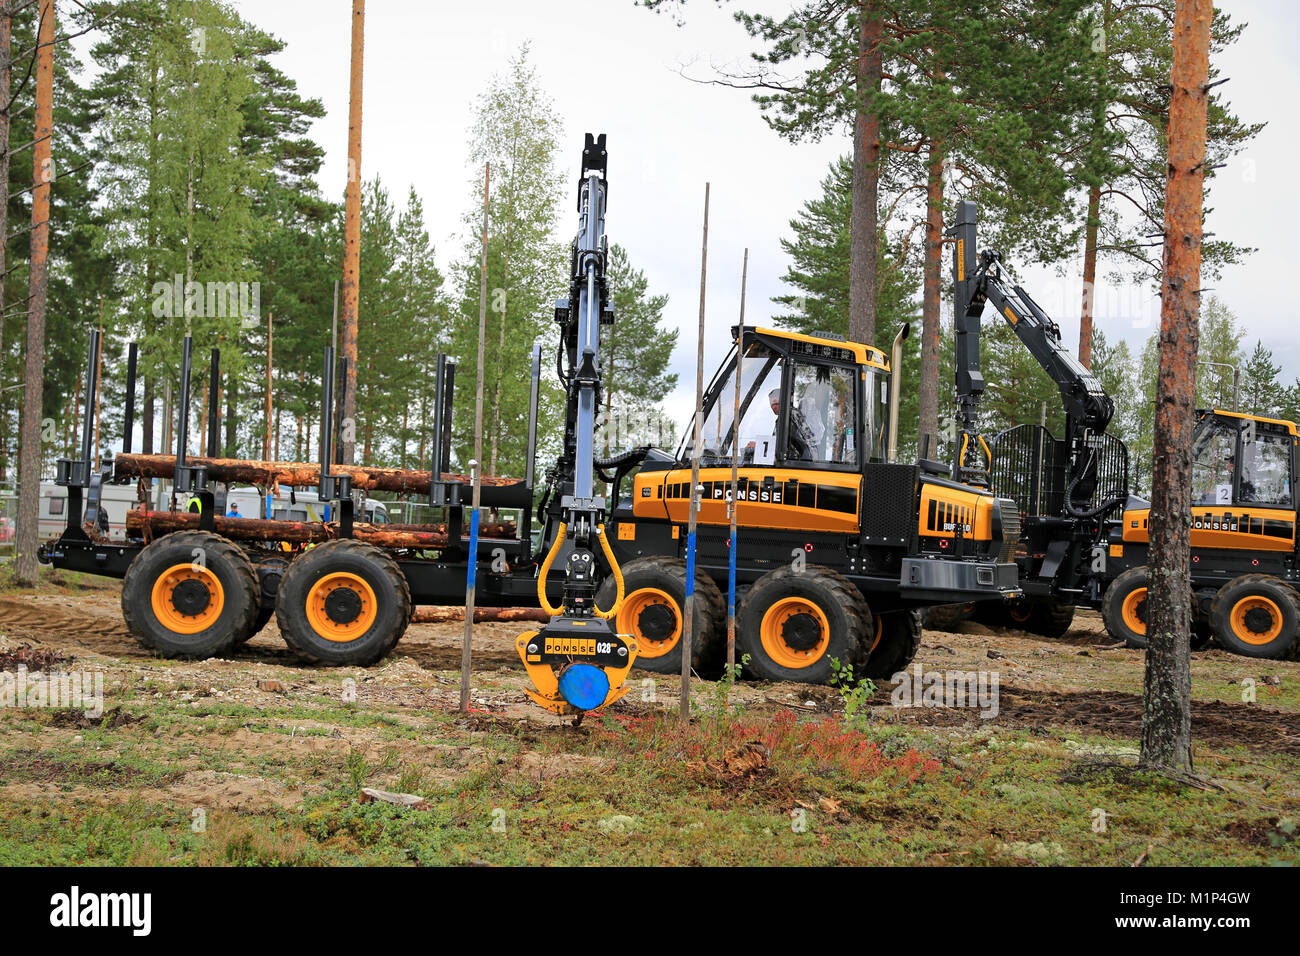 JAMSA, Finnland - 29 AUGUST 2014: Unbekannter Professional nimmt Teil an der National Forest Maschinenbediener Wettbewerb FinnMETKO 2014 statt. Stockfoto